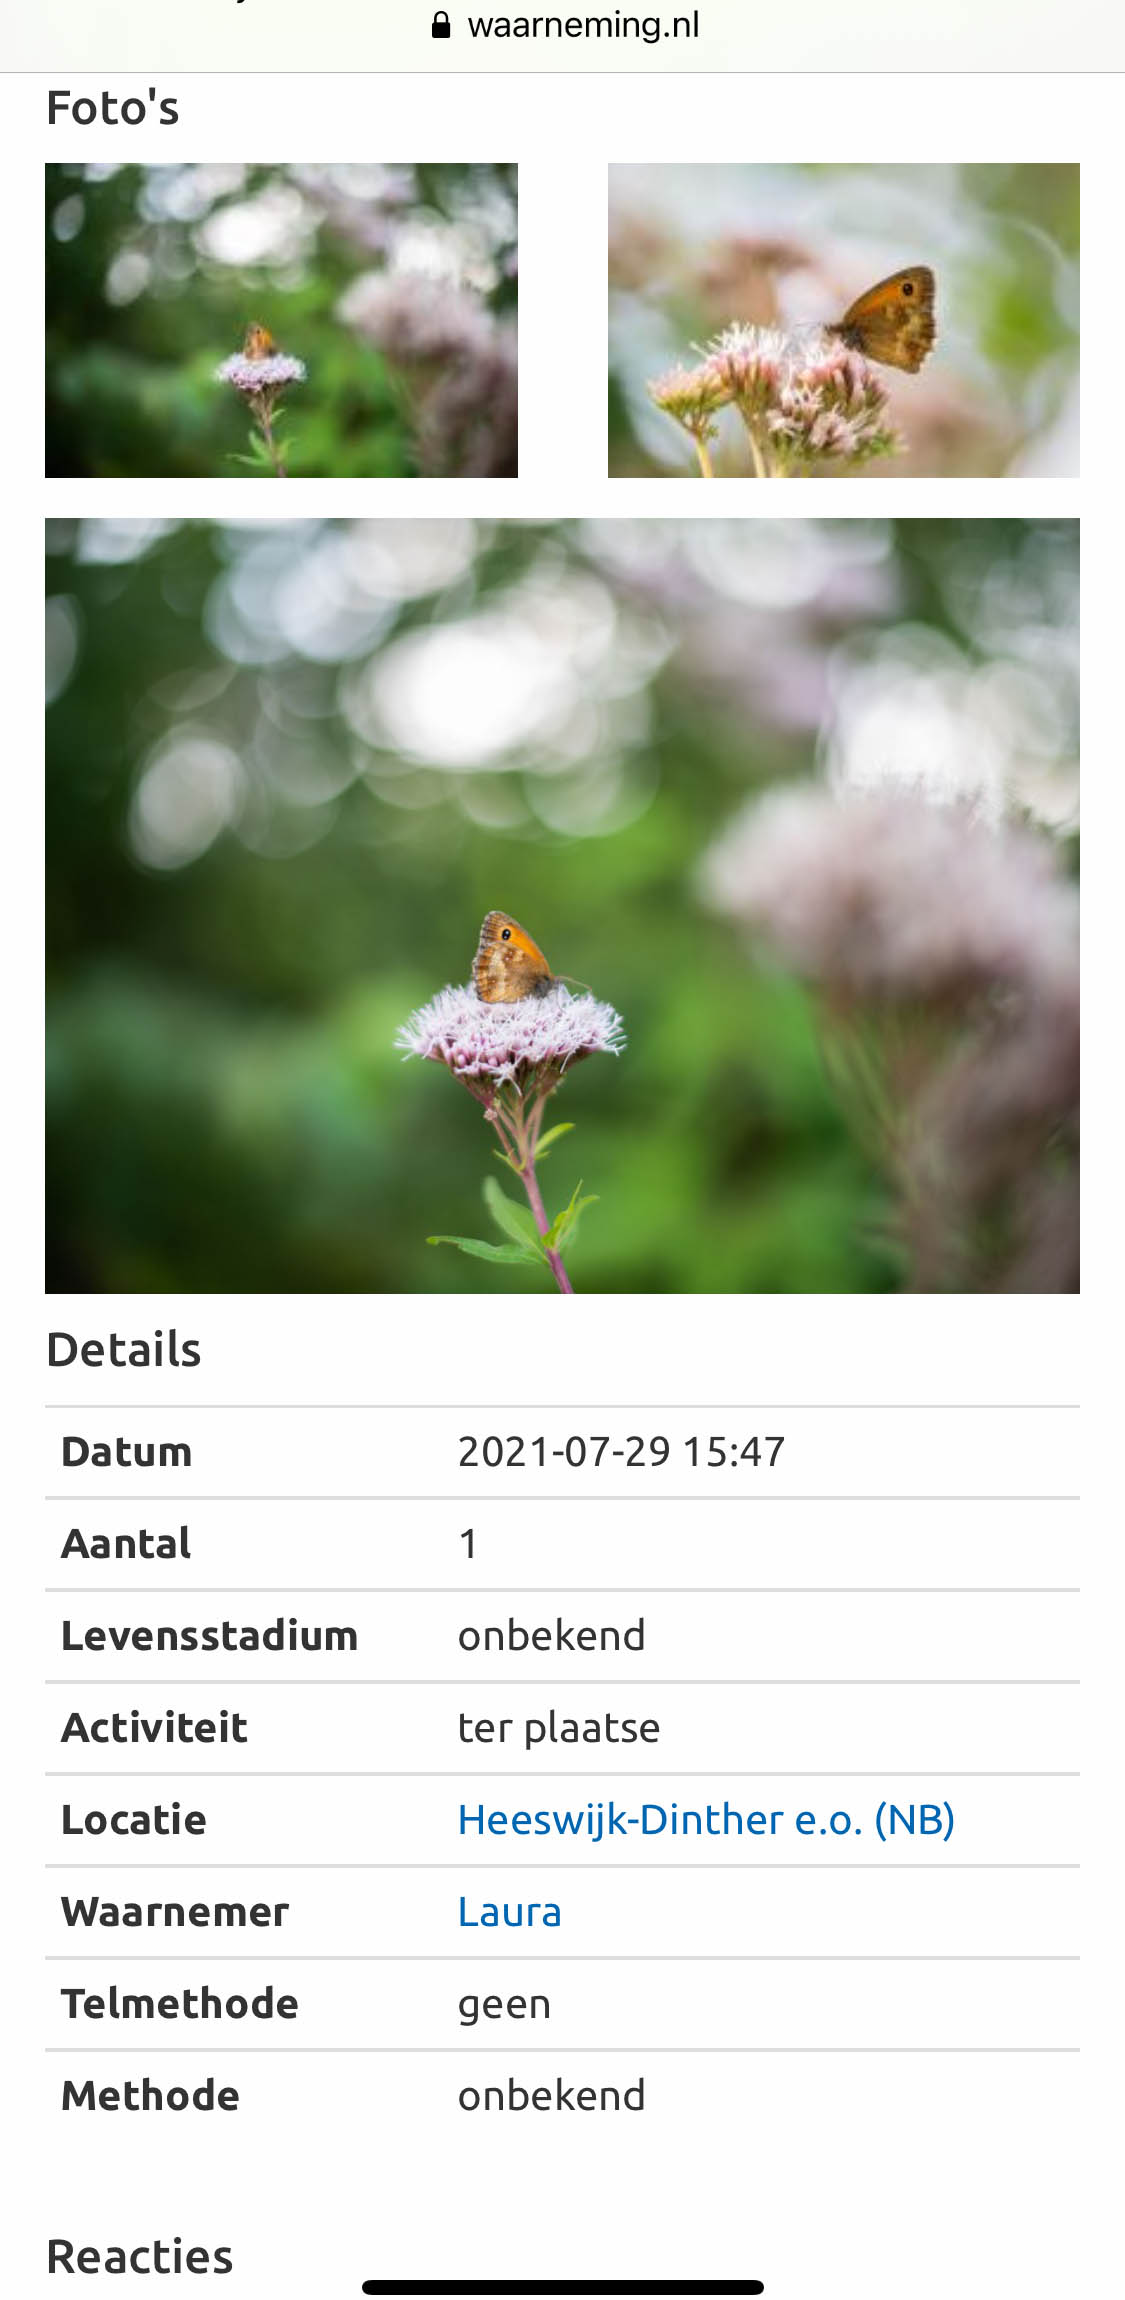 Voorbeeld van een waarneming van een oranje zandoogje vlinder op de site waarneming.nl